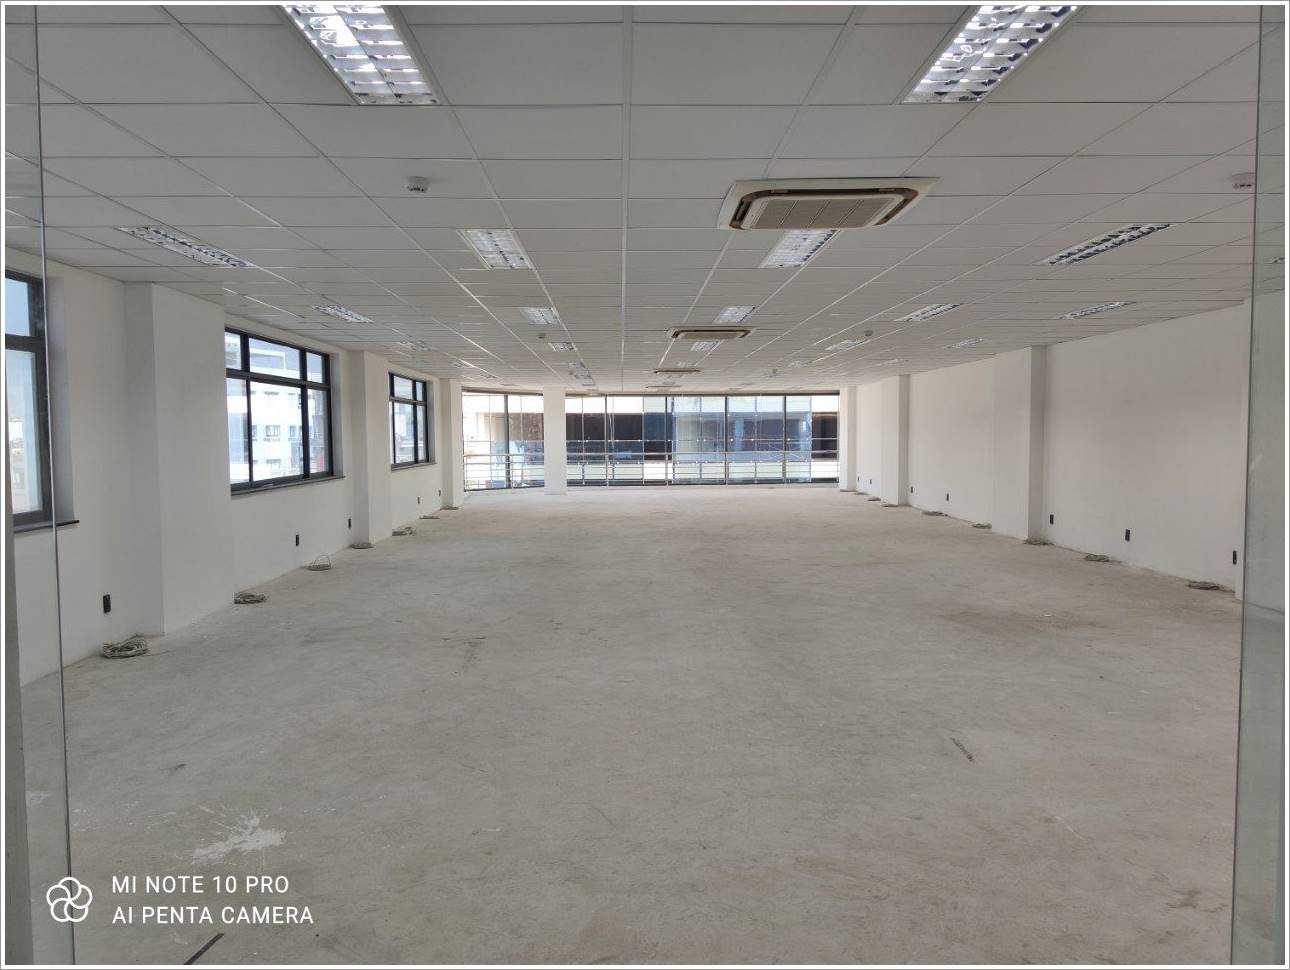 Cao ốc văn phòng cho thuê Mios Building, Hoàng Hoa Thám, Quận Bình Thạnh, TP.HCM - vlook.vn